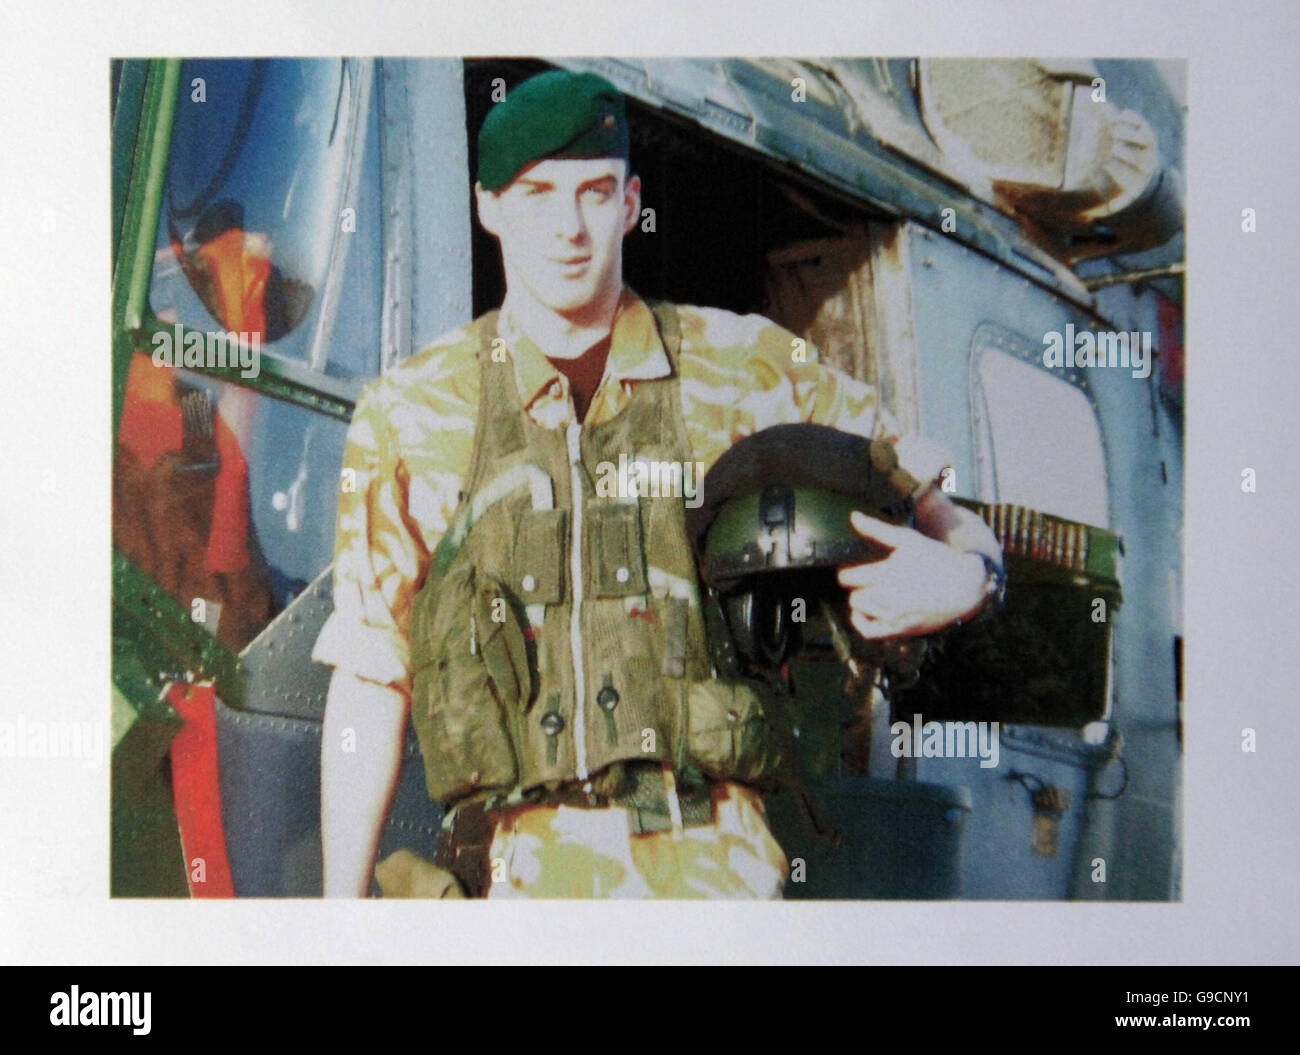 Foto de Royal Marine Paul Collins, quien murió con otros cuatro en un accidente de helicóptero militar en Irak, como aparece en su orden de servicio hoy en su funeral en el Commando Training Center, Lympstone, Devon. Foto de stock